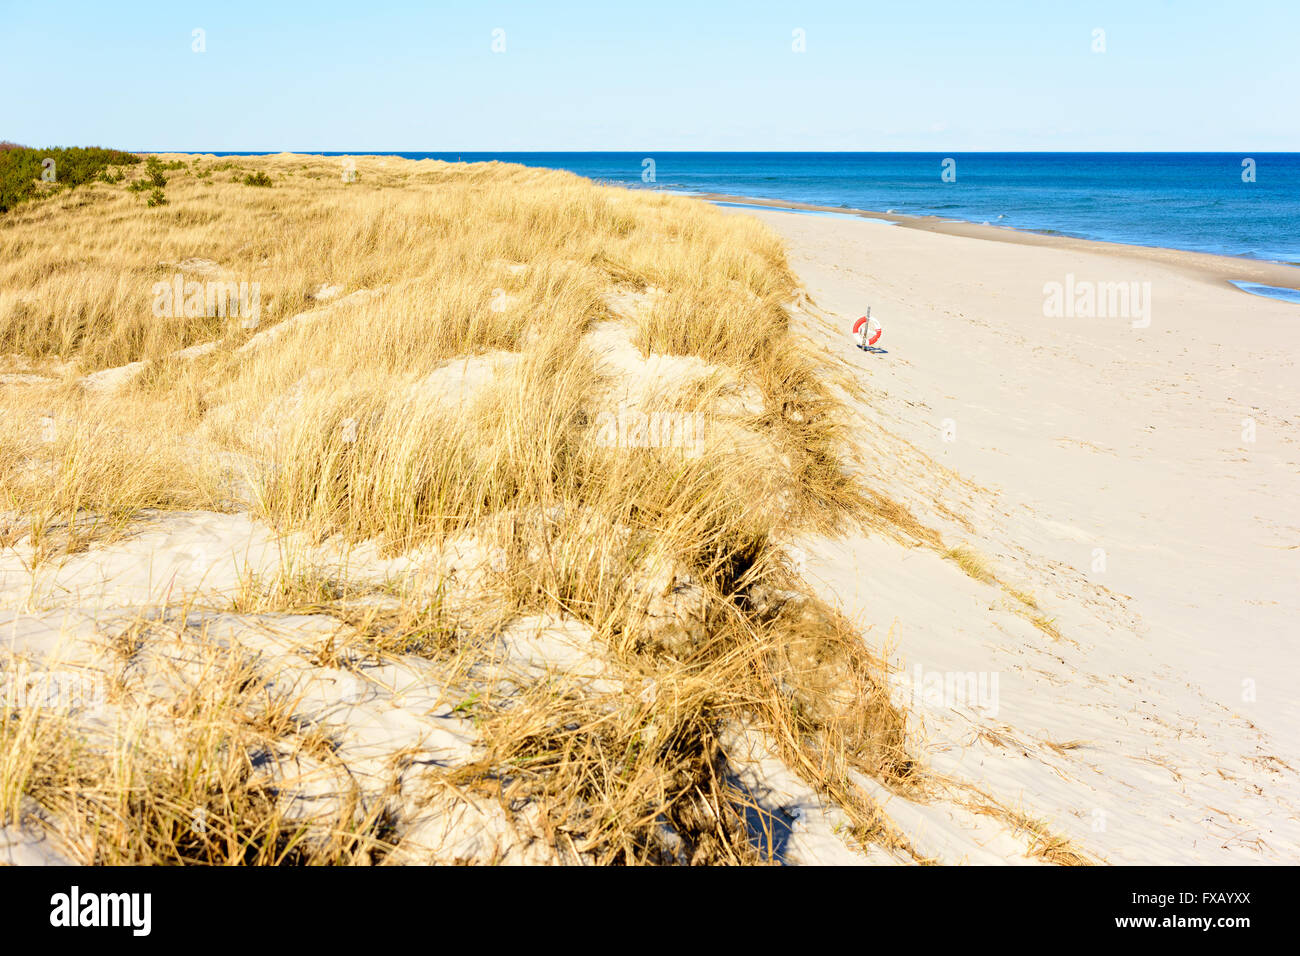 Ricoperto di erba dune di sabbia in riva al mare, trasformando in una bella spiaggia di sabbia con un salvagente con la pendenza. Sandhammaren, Svezia. Foto Stock